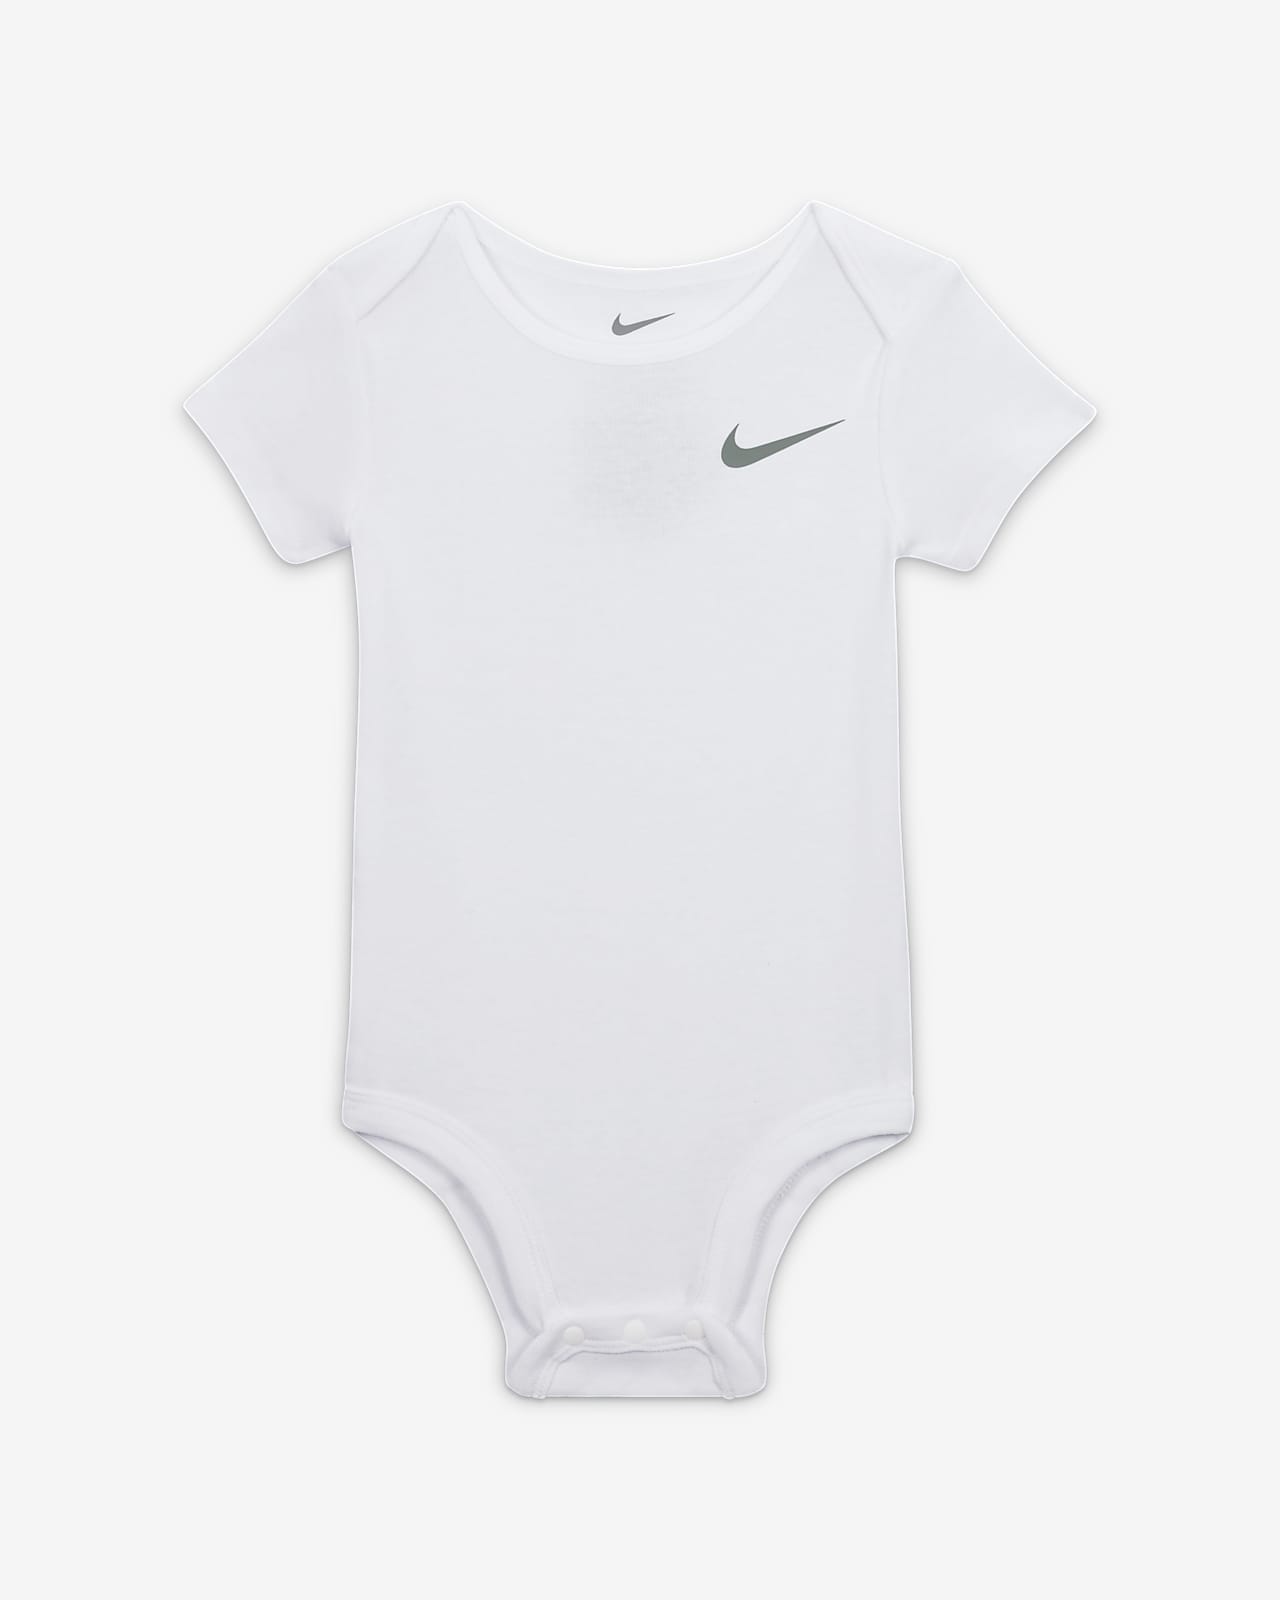 Nike Essentials 3-Piece Pants 3-Piece Set. Baby Set